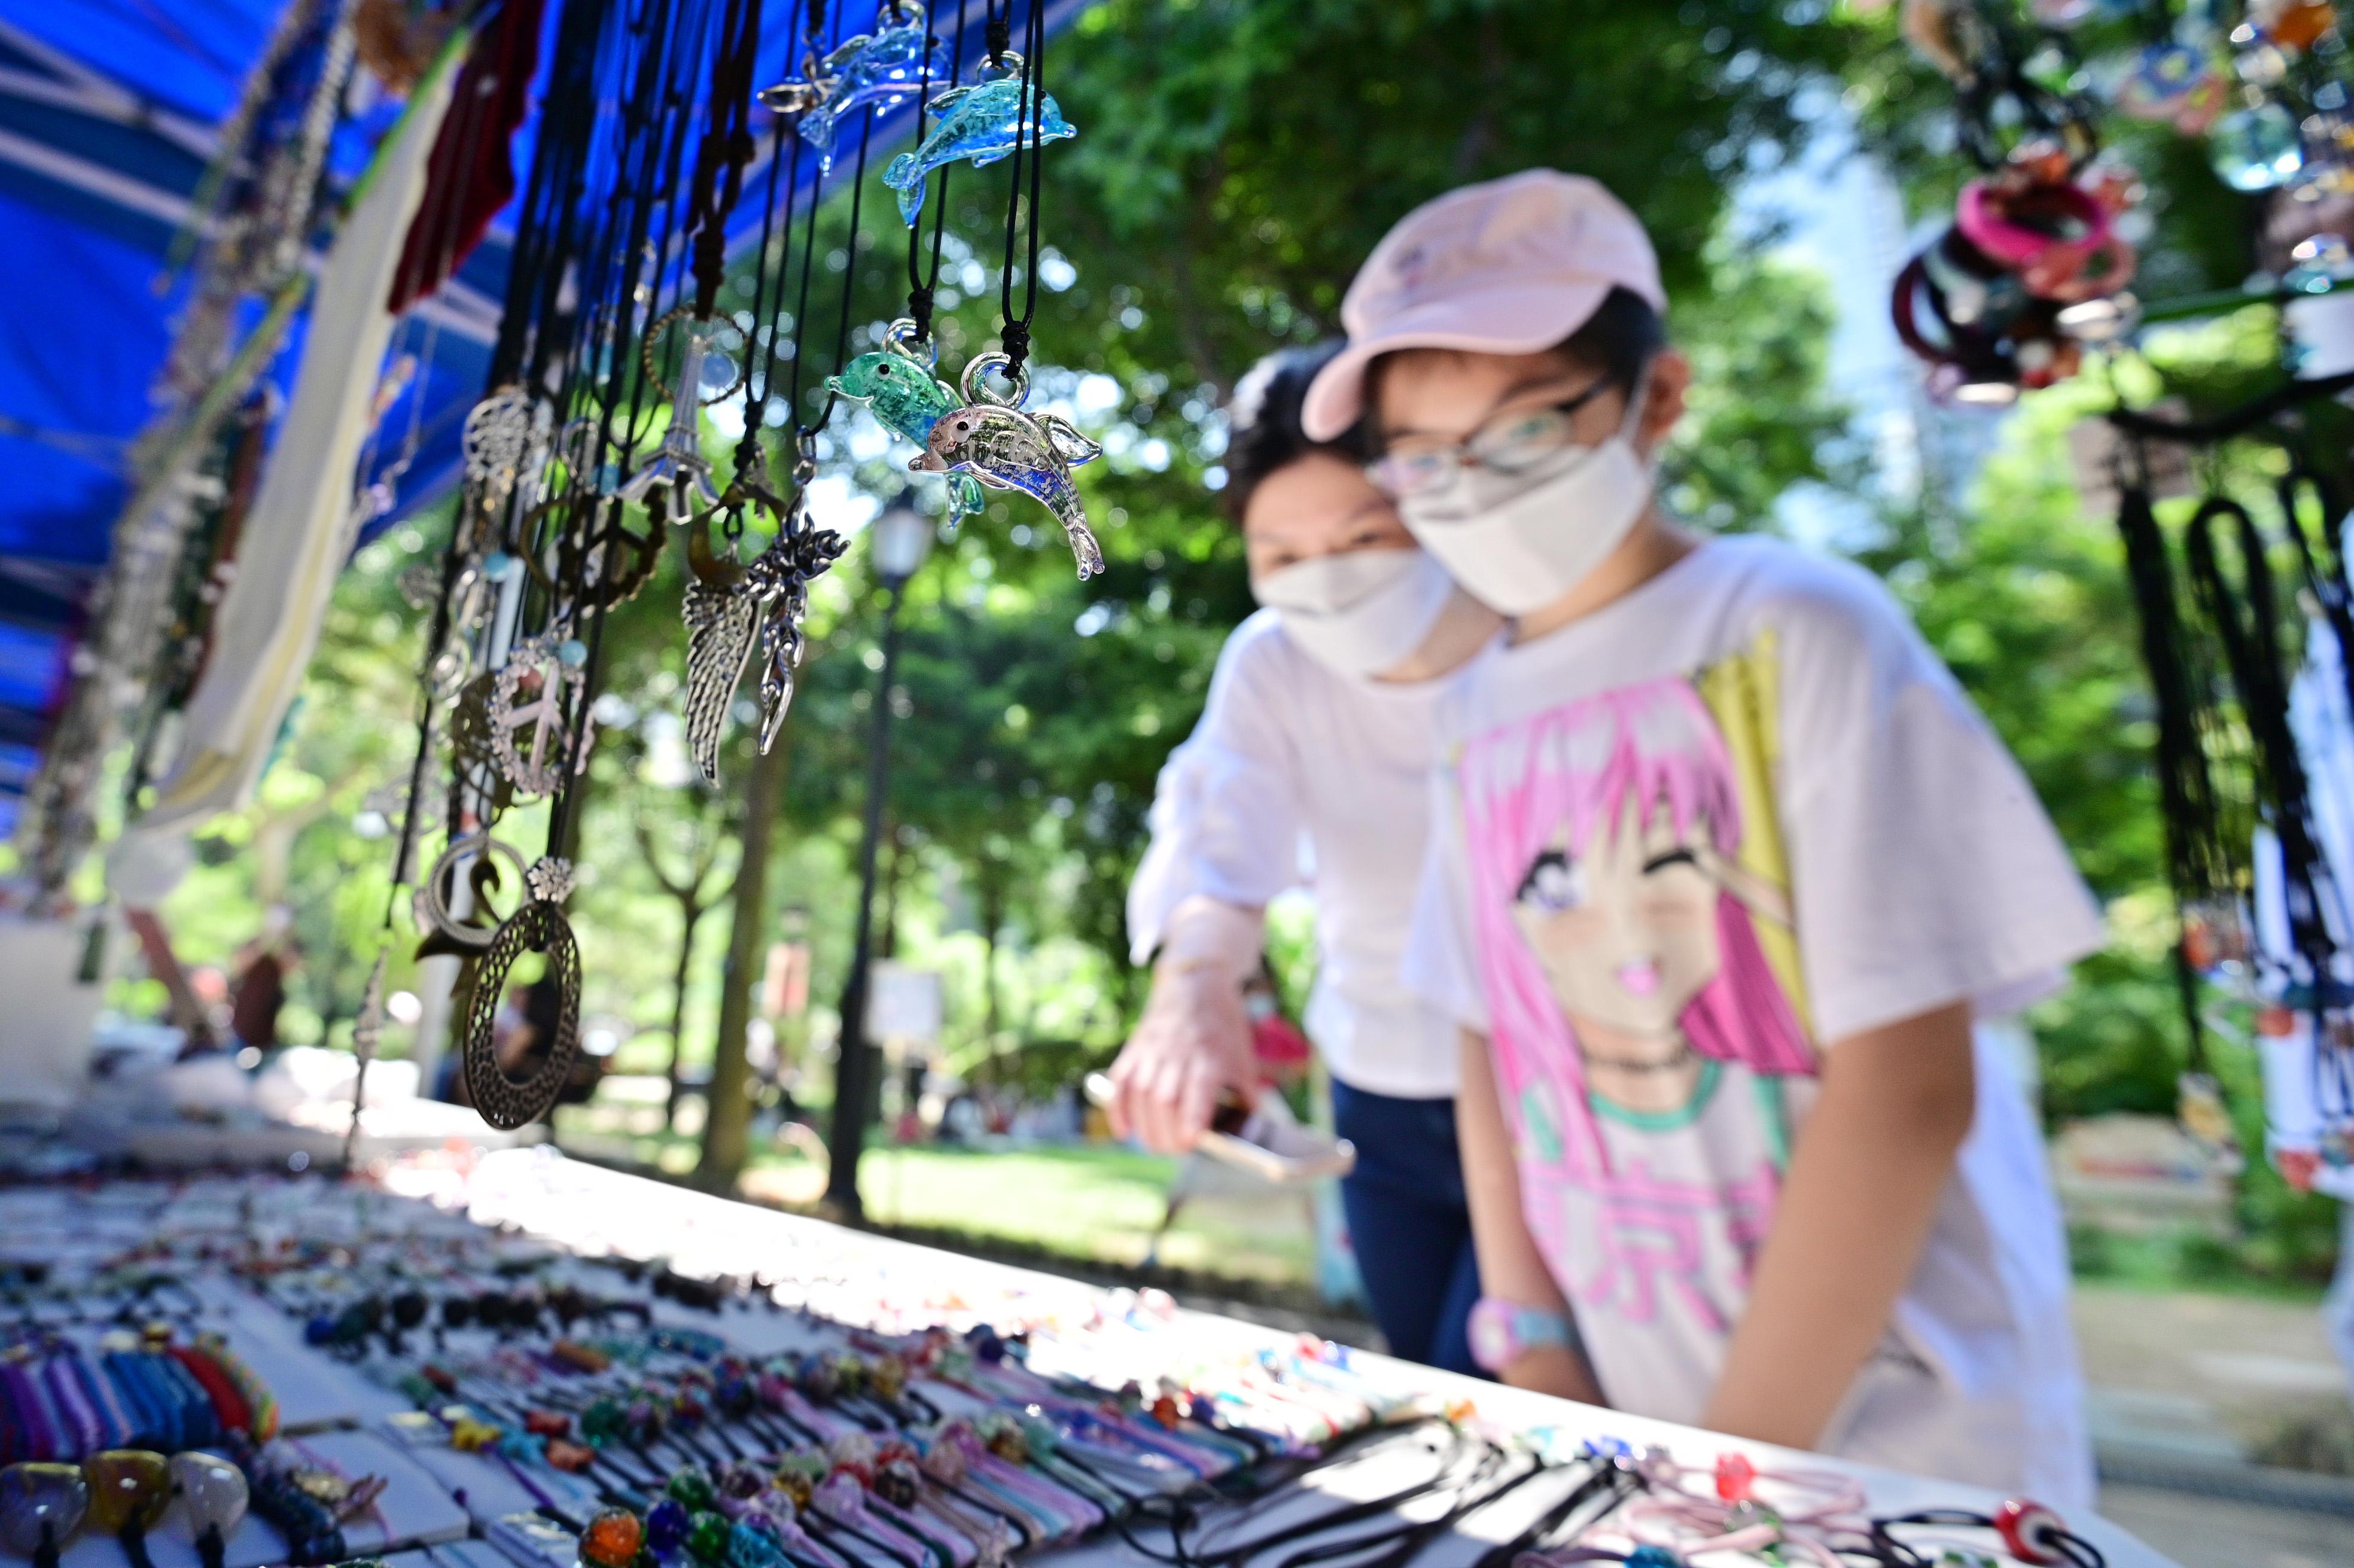 康乐及文化事务署邀请市民参与「艺趣坊」活动。活动于二○二三年一月一日至十二月三十一日期间逢星期六、日及公众假期在香港公园举行，旨在培养公众对艺术的兴趣。